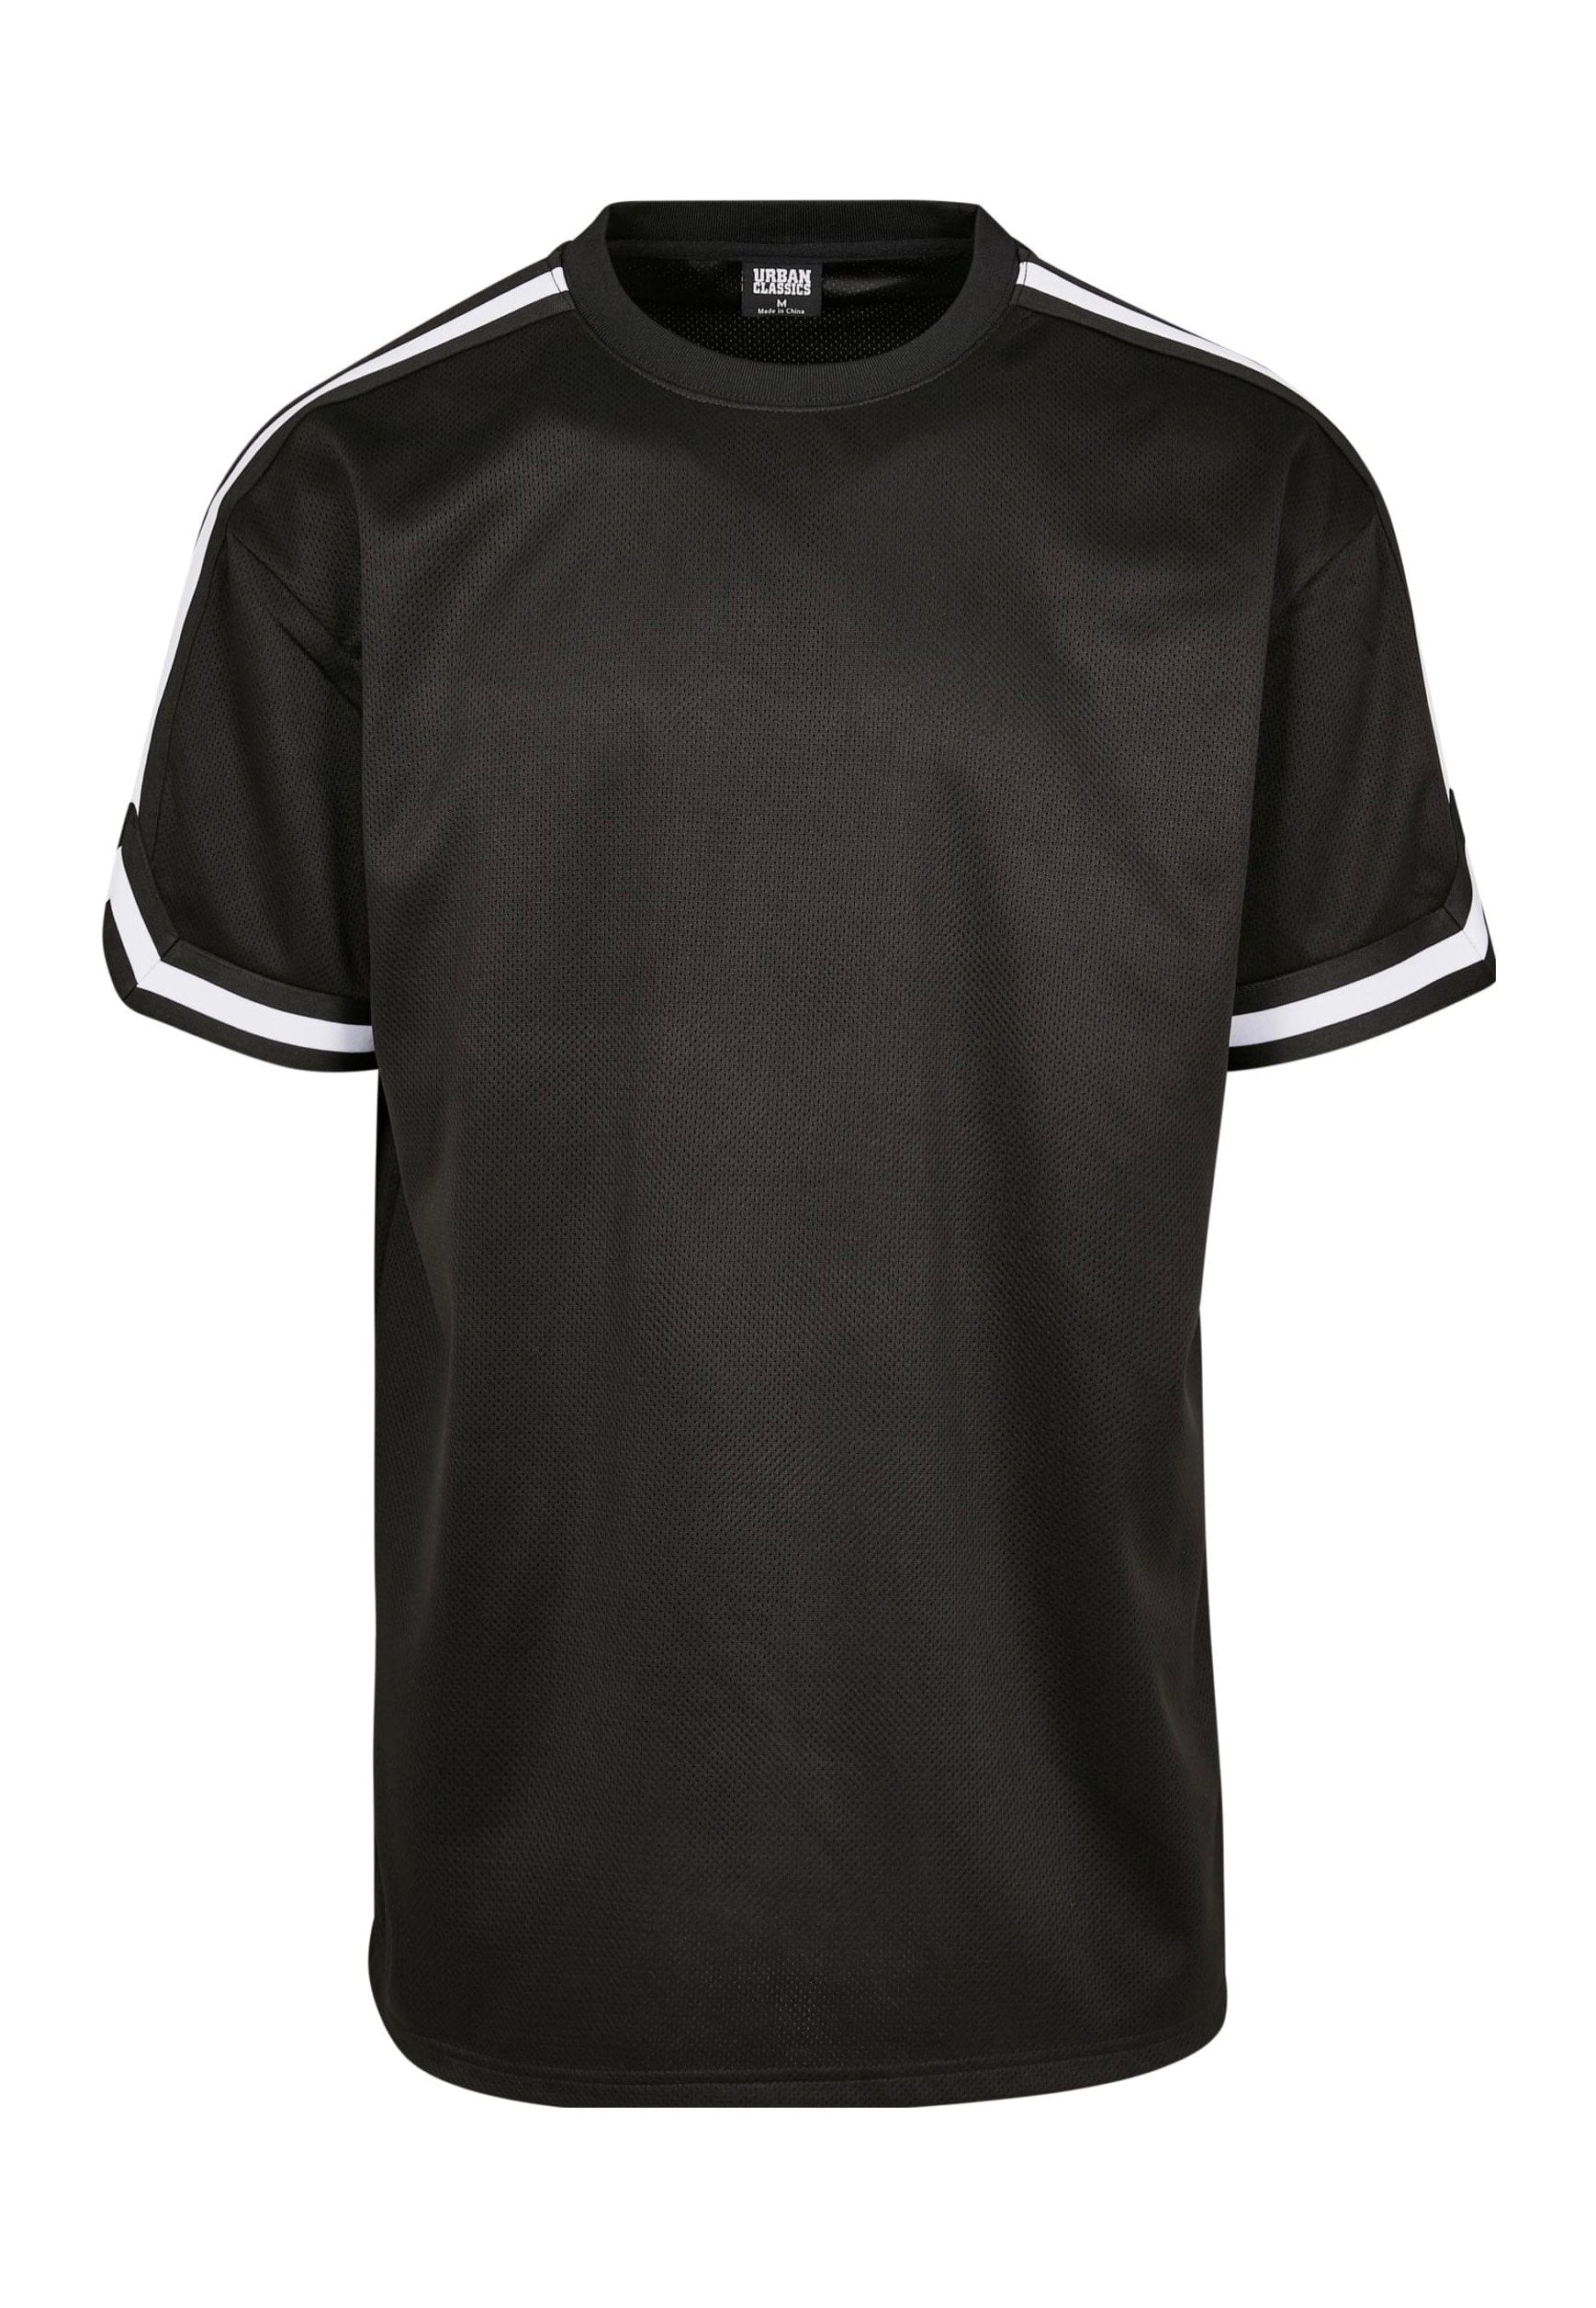 Urban Classics - Oversized Stripes Mesh Black - T-Shirt